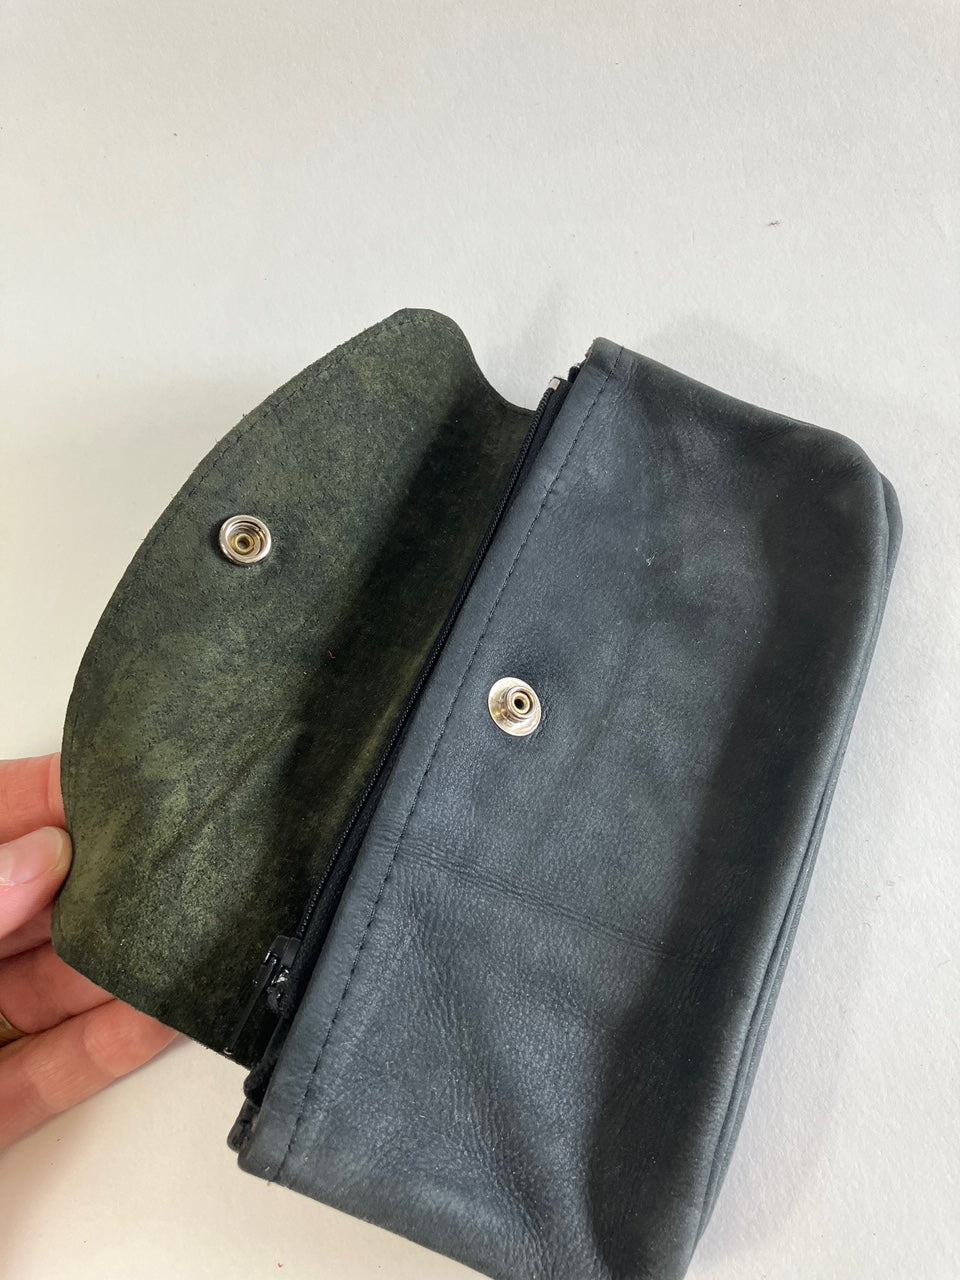 SAMPLE mat black Minimalist leather wallet